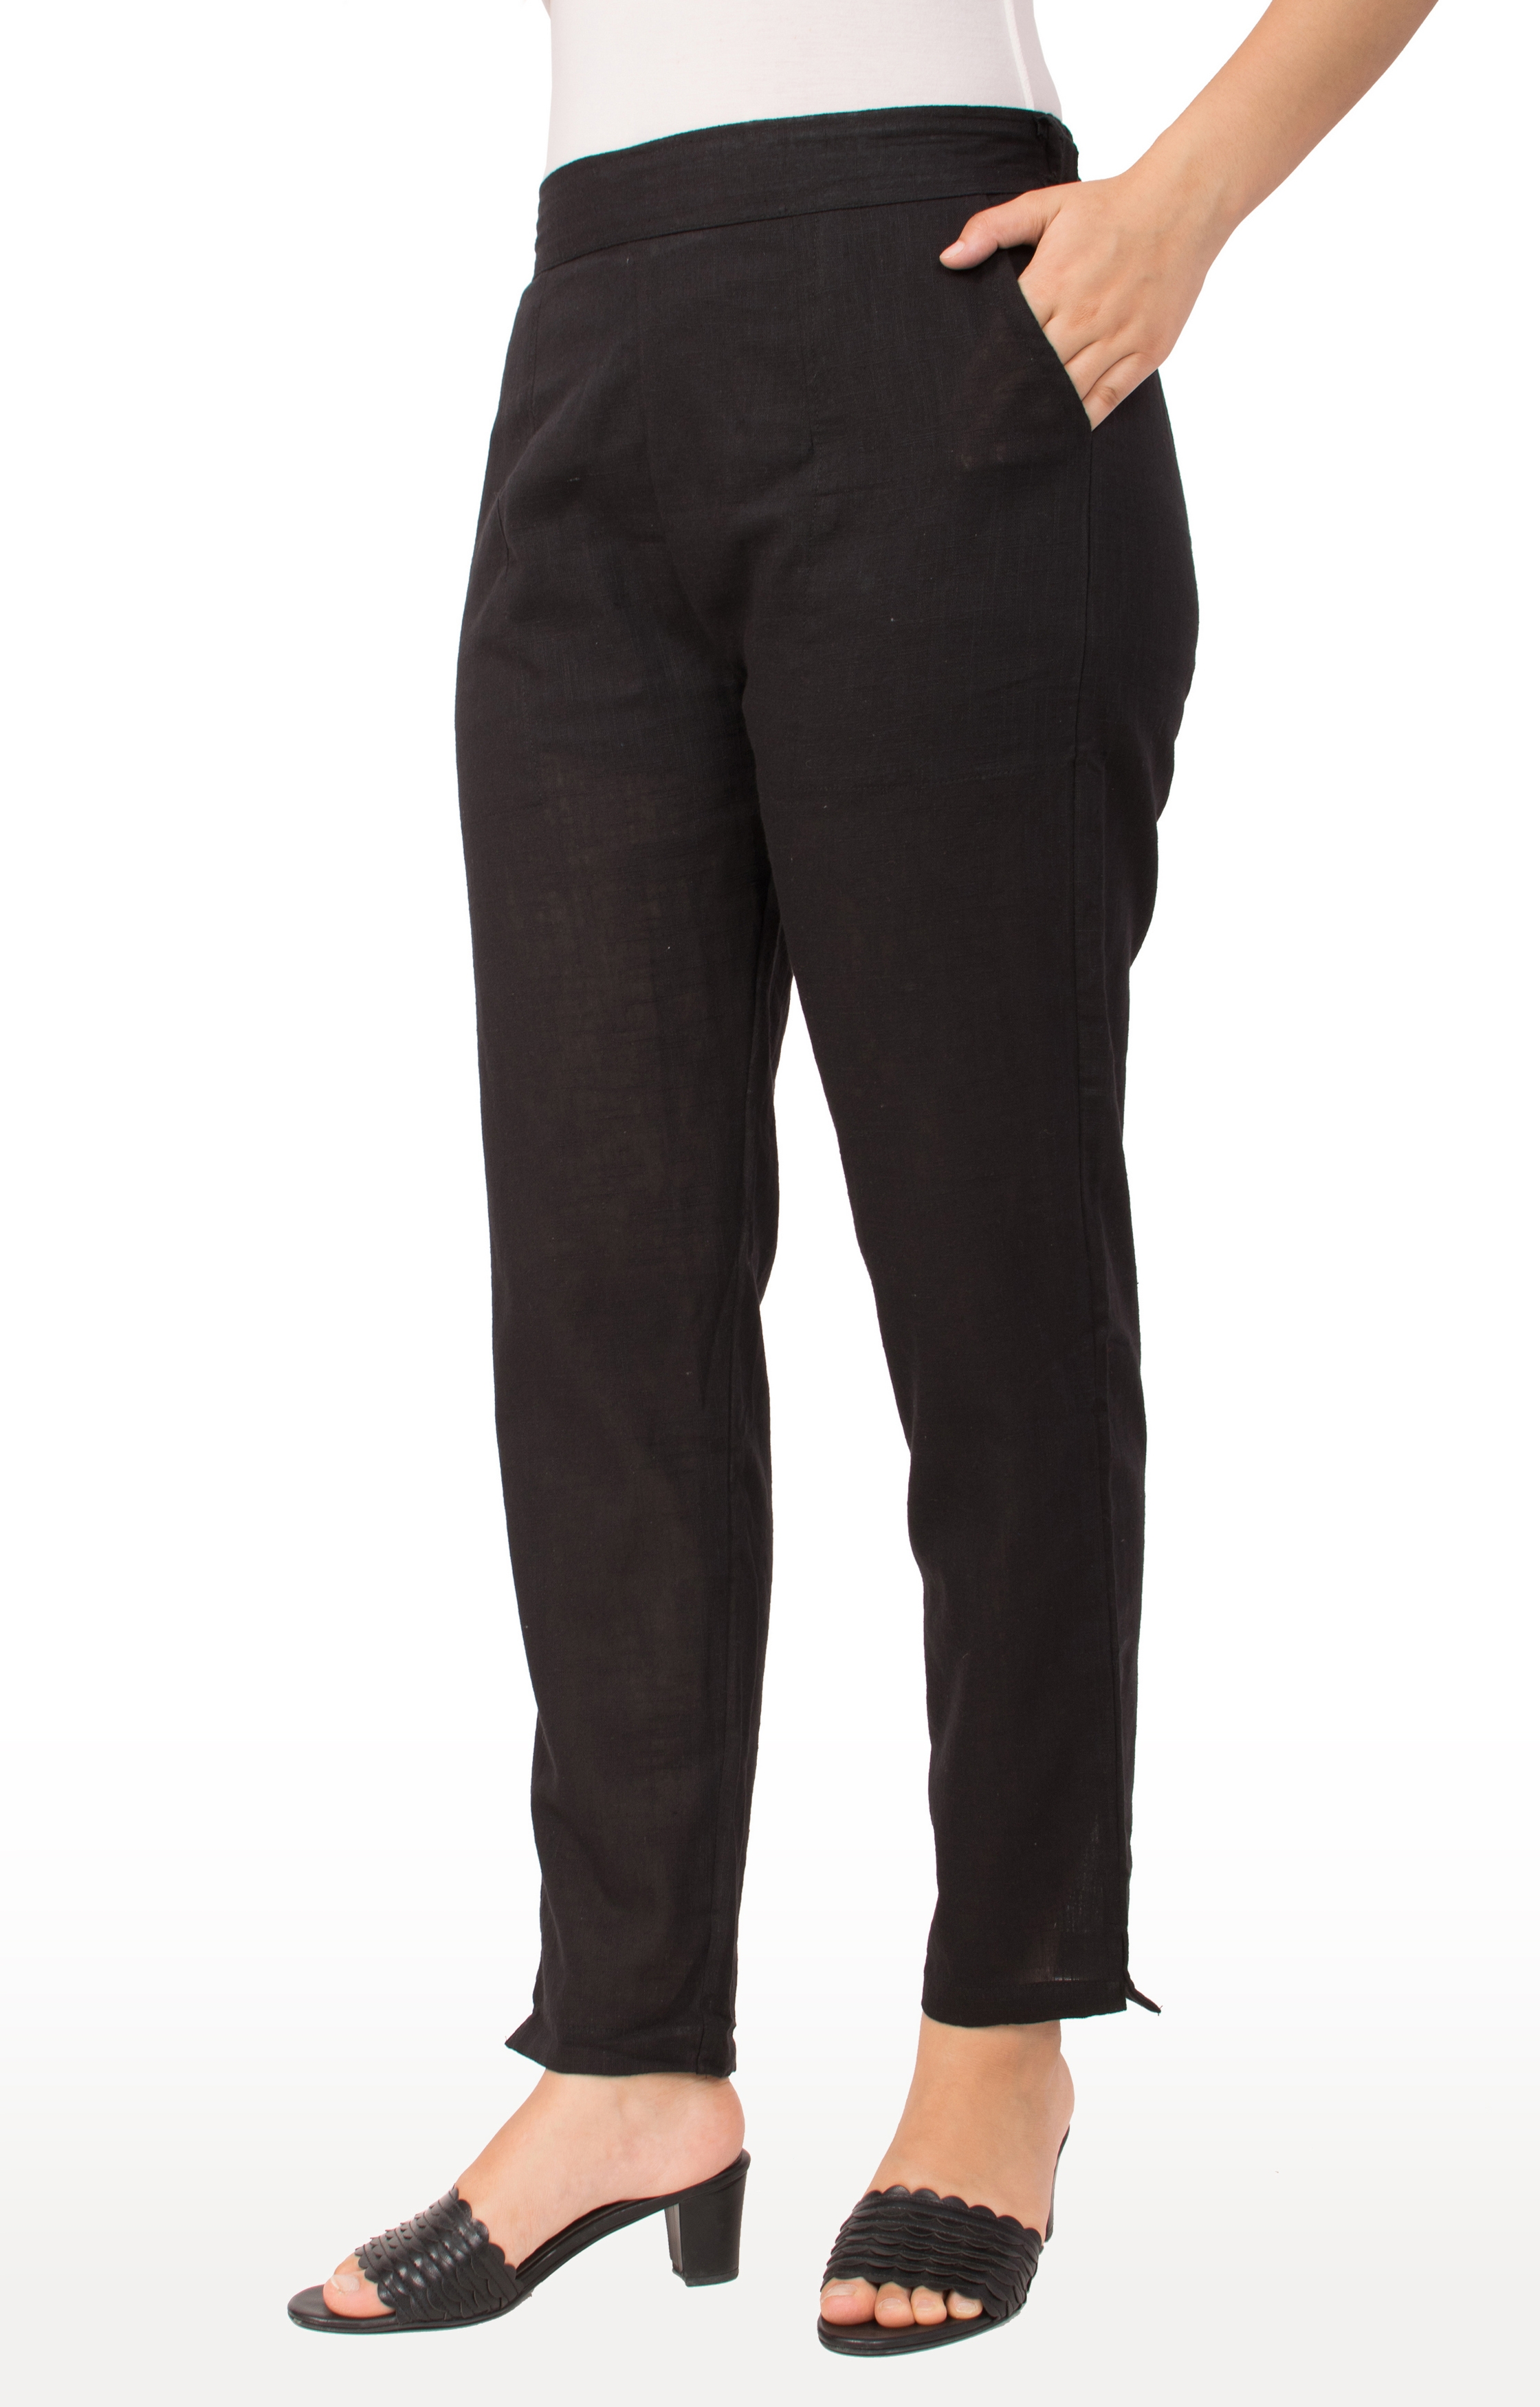 Miravan | Miravan Cotton Solid Straight Regular fit Casual Trouser Pant for Women's & Girls 2